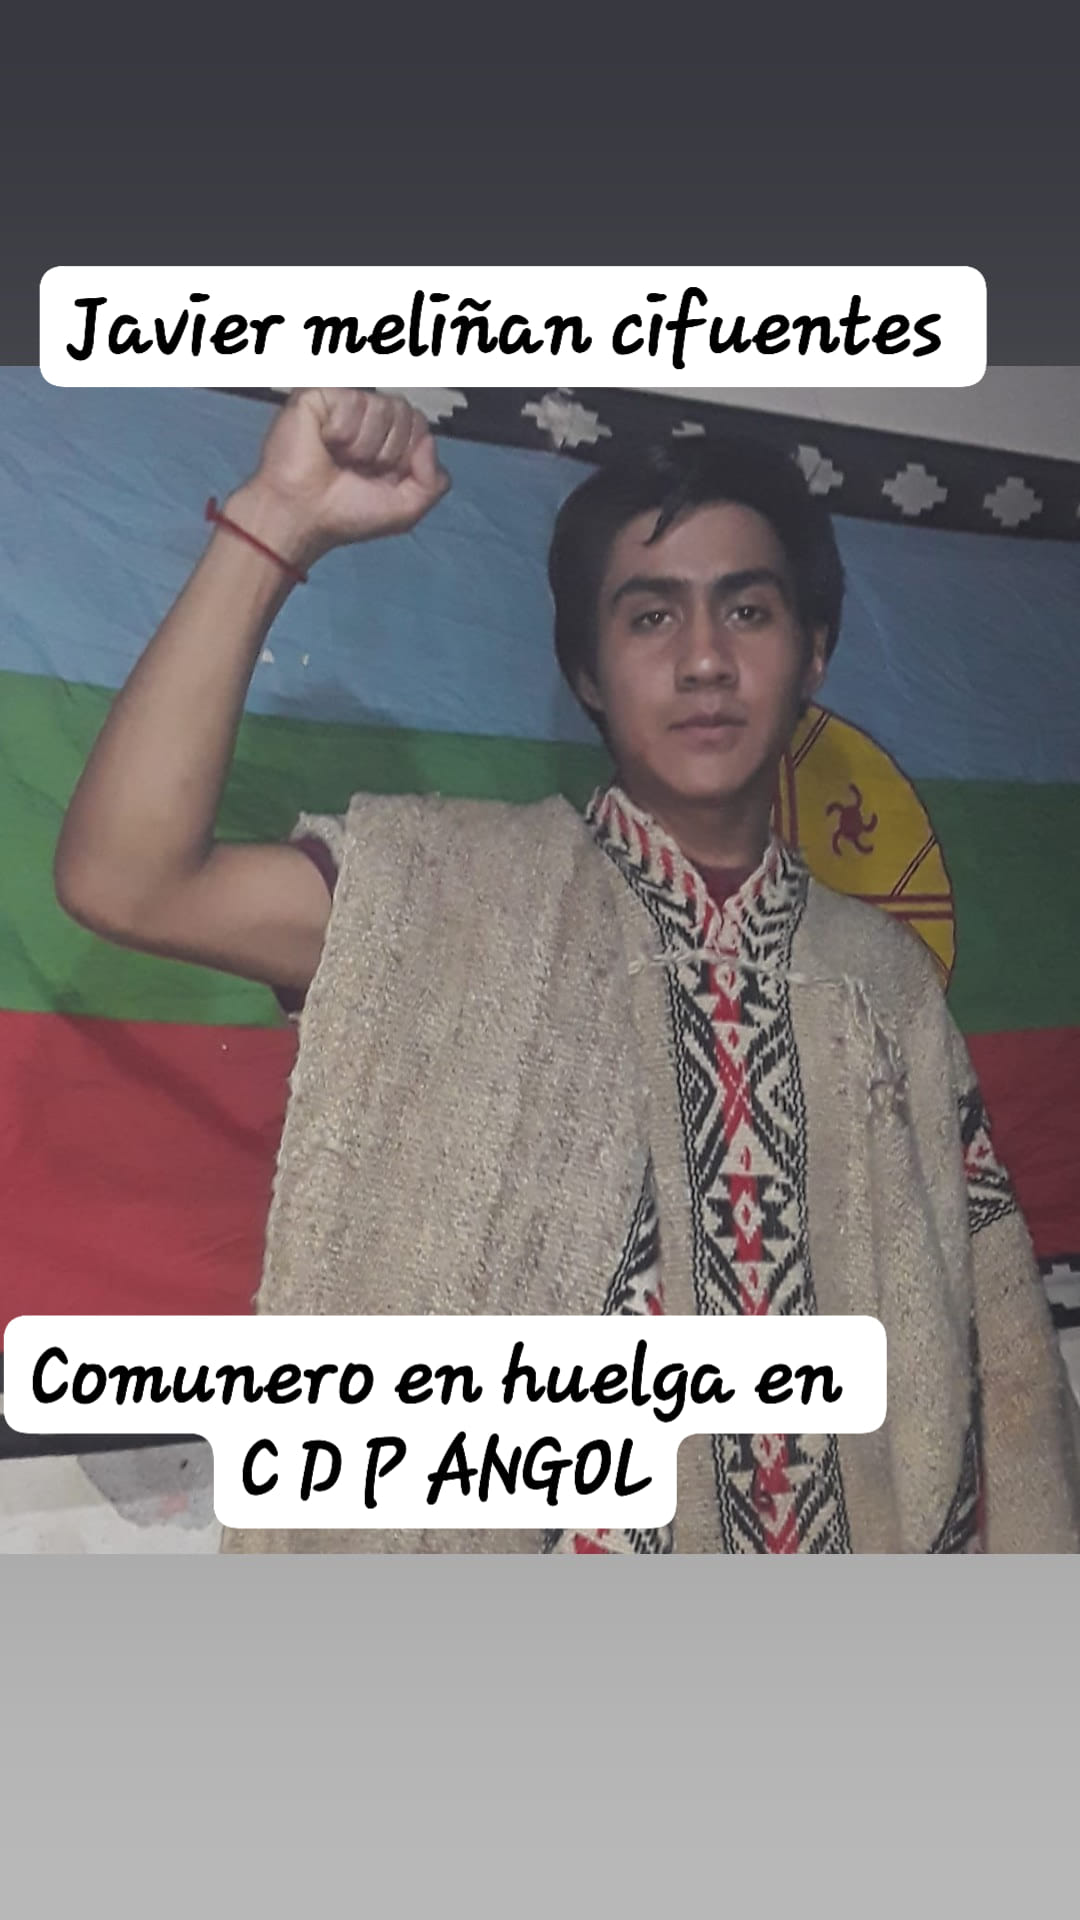 Puede ser una imagen de 1 persona, de pie y texto que dice "Javier meliñan cifuentes Comunero en huelga en CPP ANGOL"